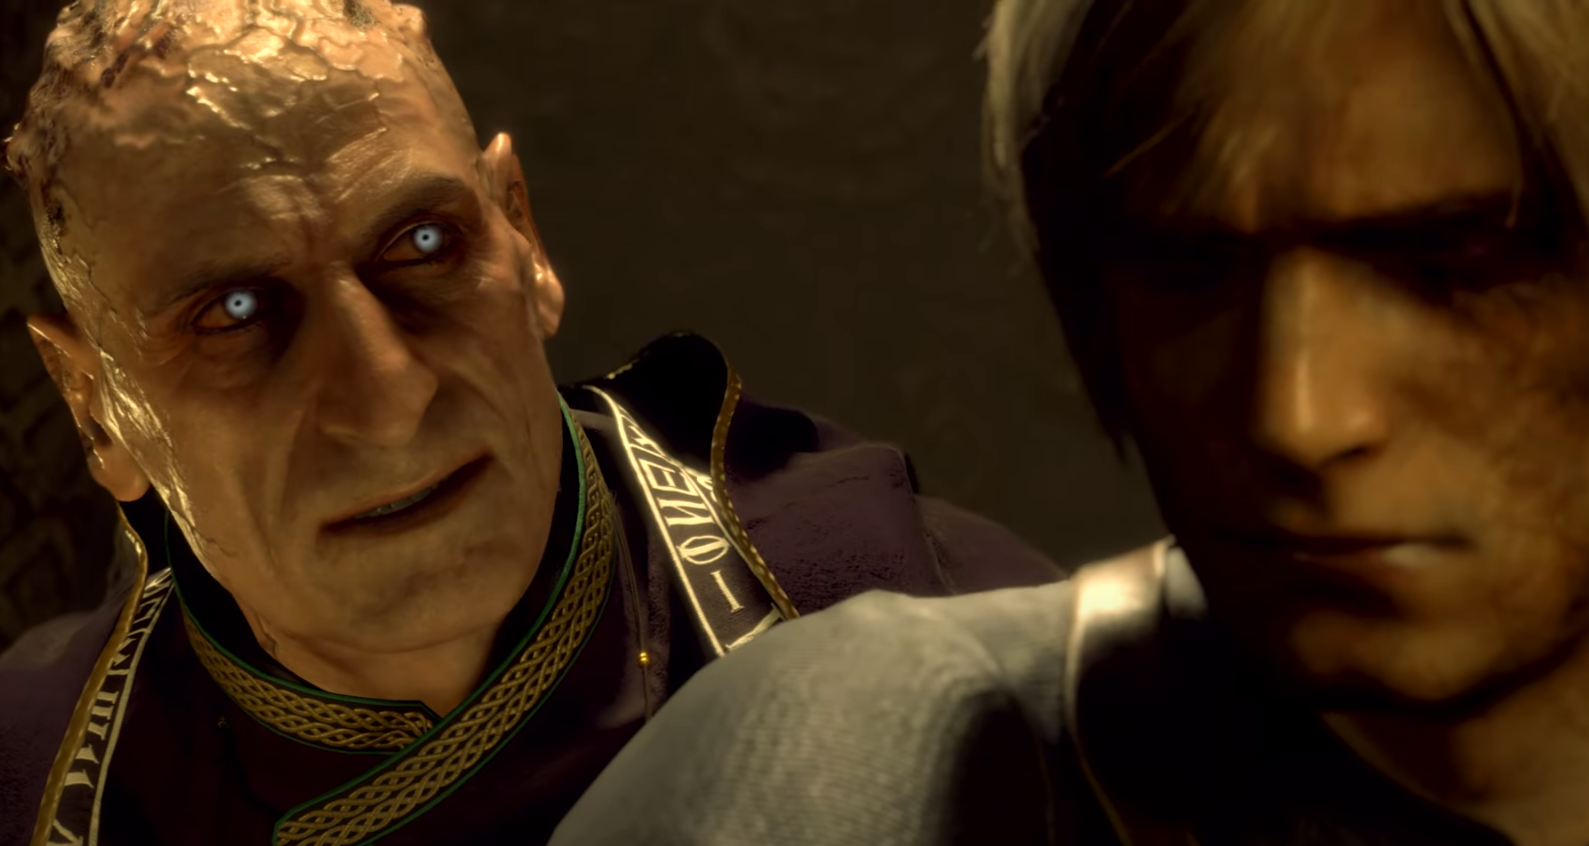 “Resident Evil 4 Remake” ganha novo trailer focado em gameplay de ação e combate